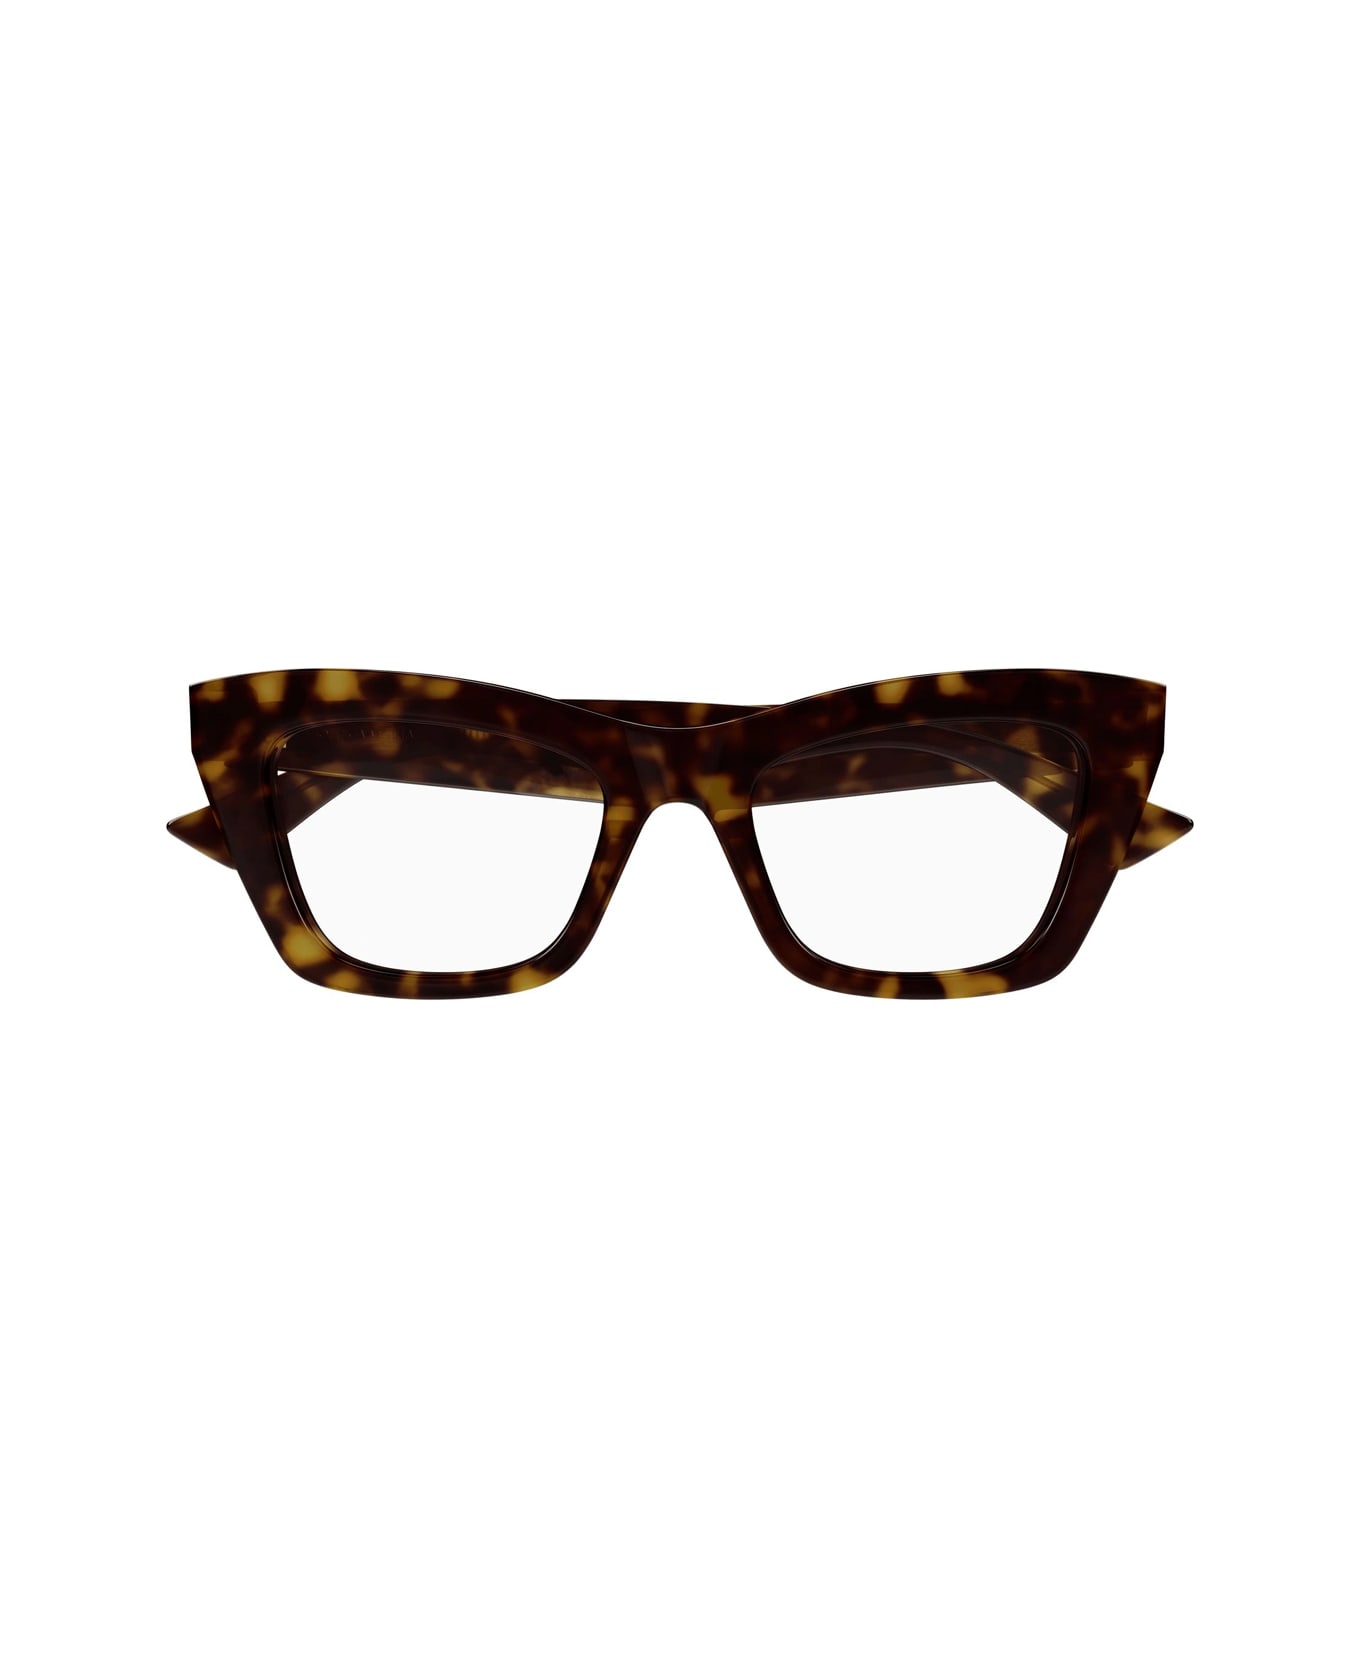 Bottega Veneta Eyewear Bv1215o 002 Glasses - Marrone アイウェア